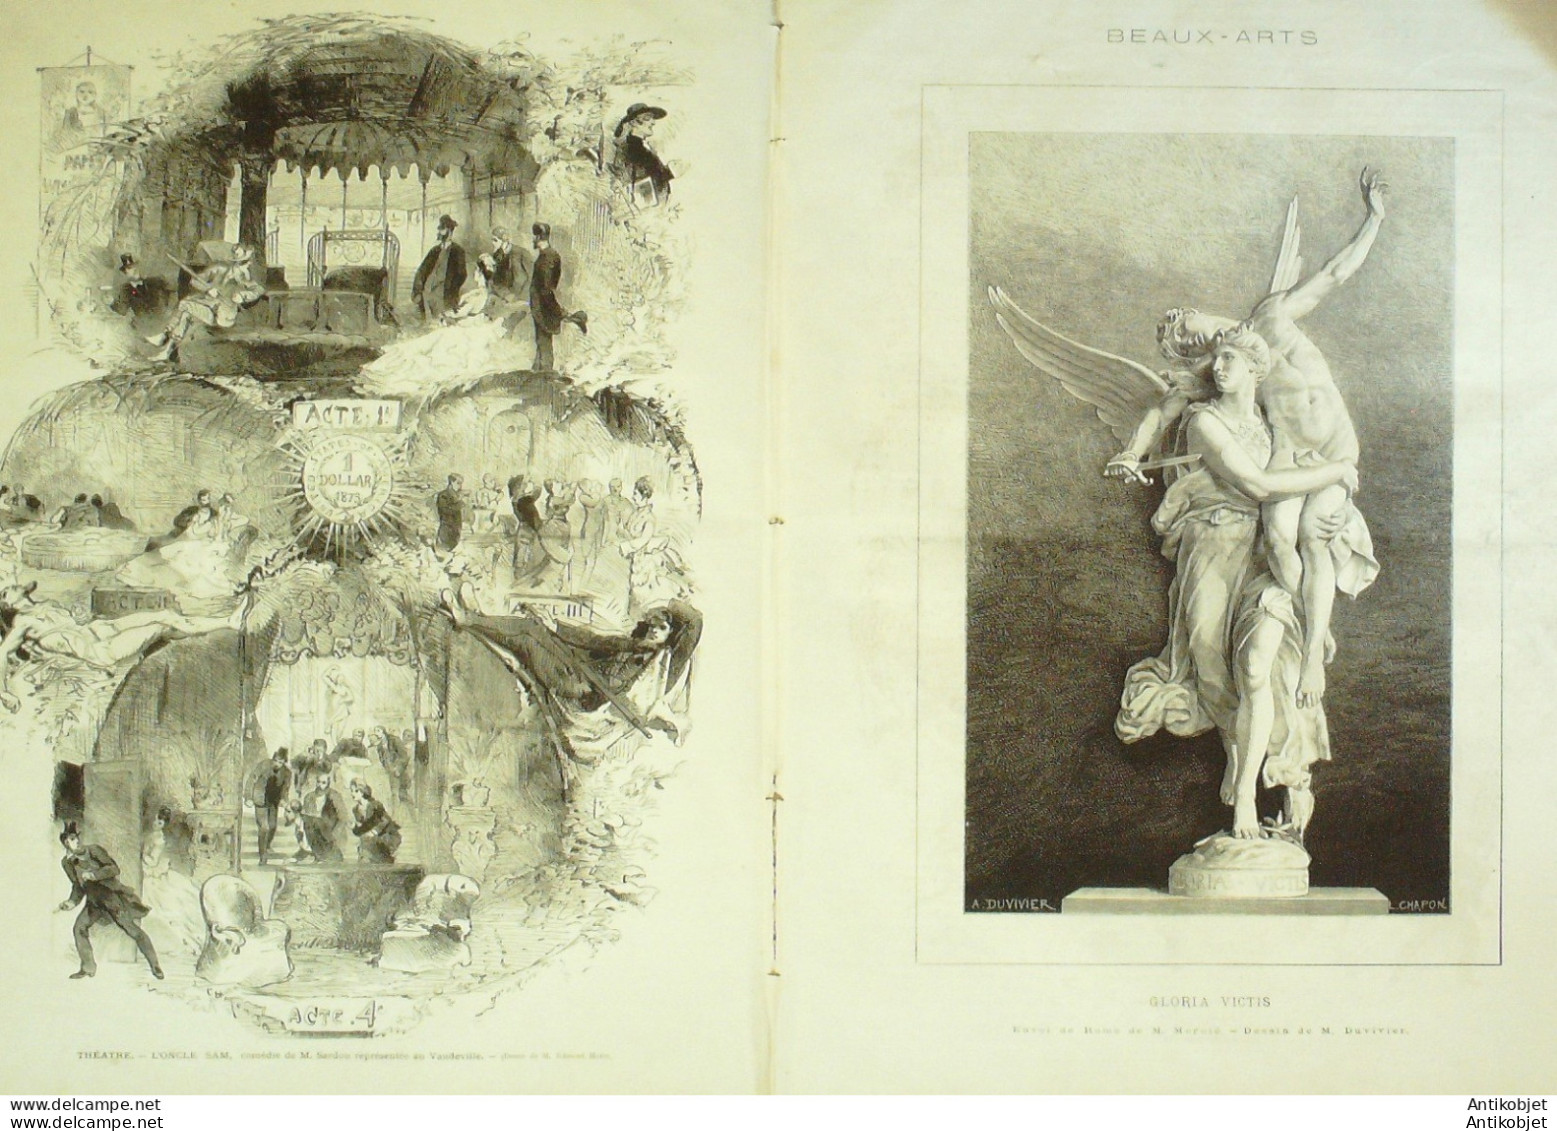 Le Monde Illustré 1873 N°866 Gravelotte(57) Molsheim (67) Parc Montsouris Travaux De Vanne - 1850 - 1899